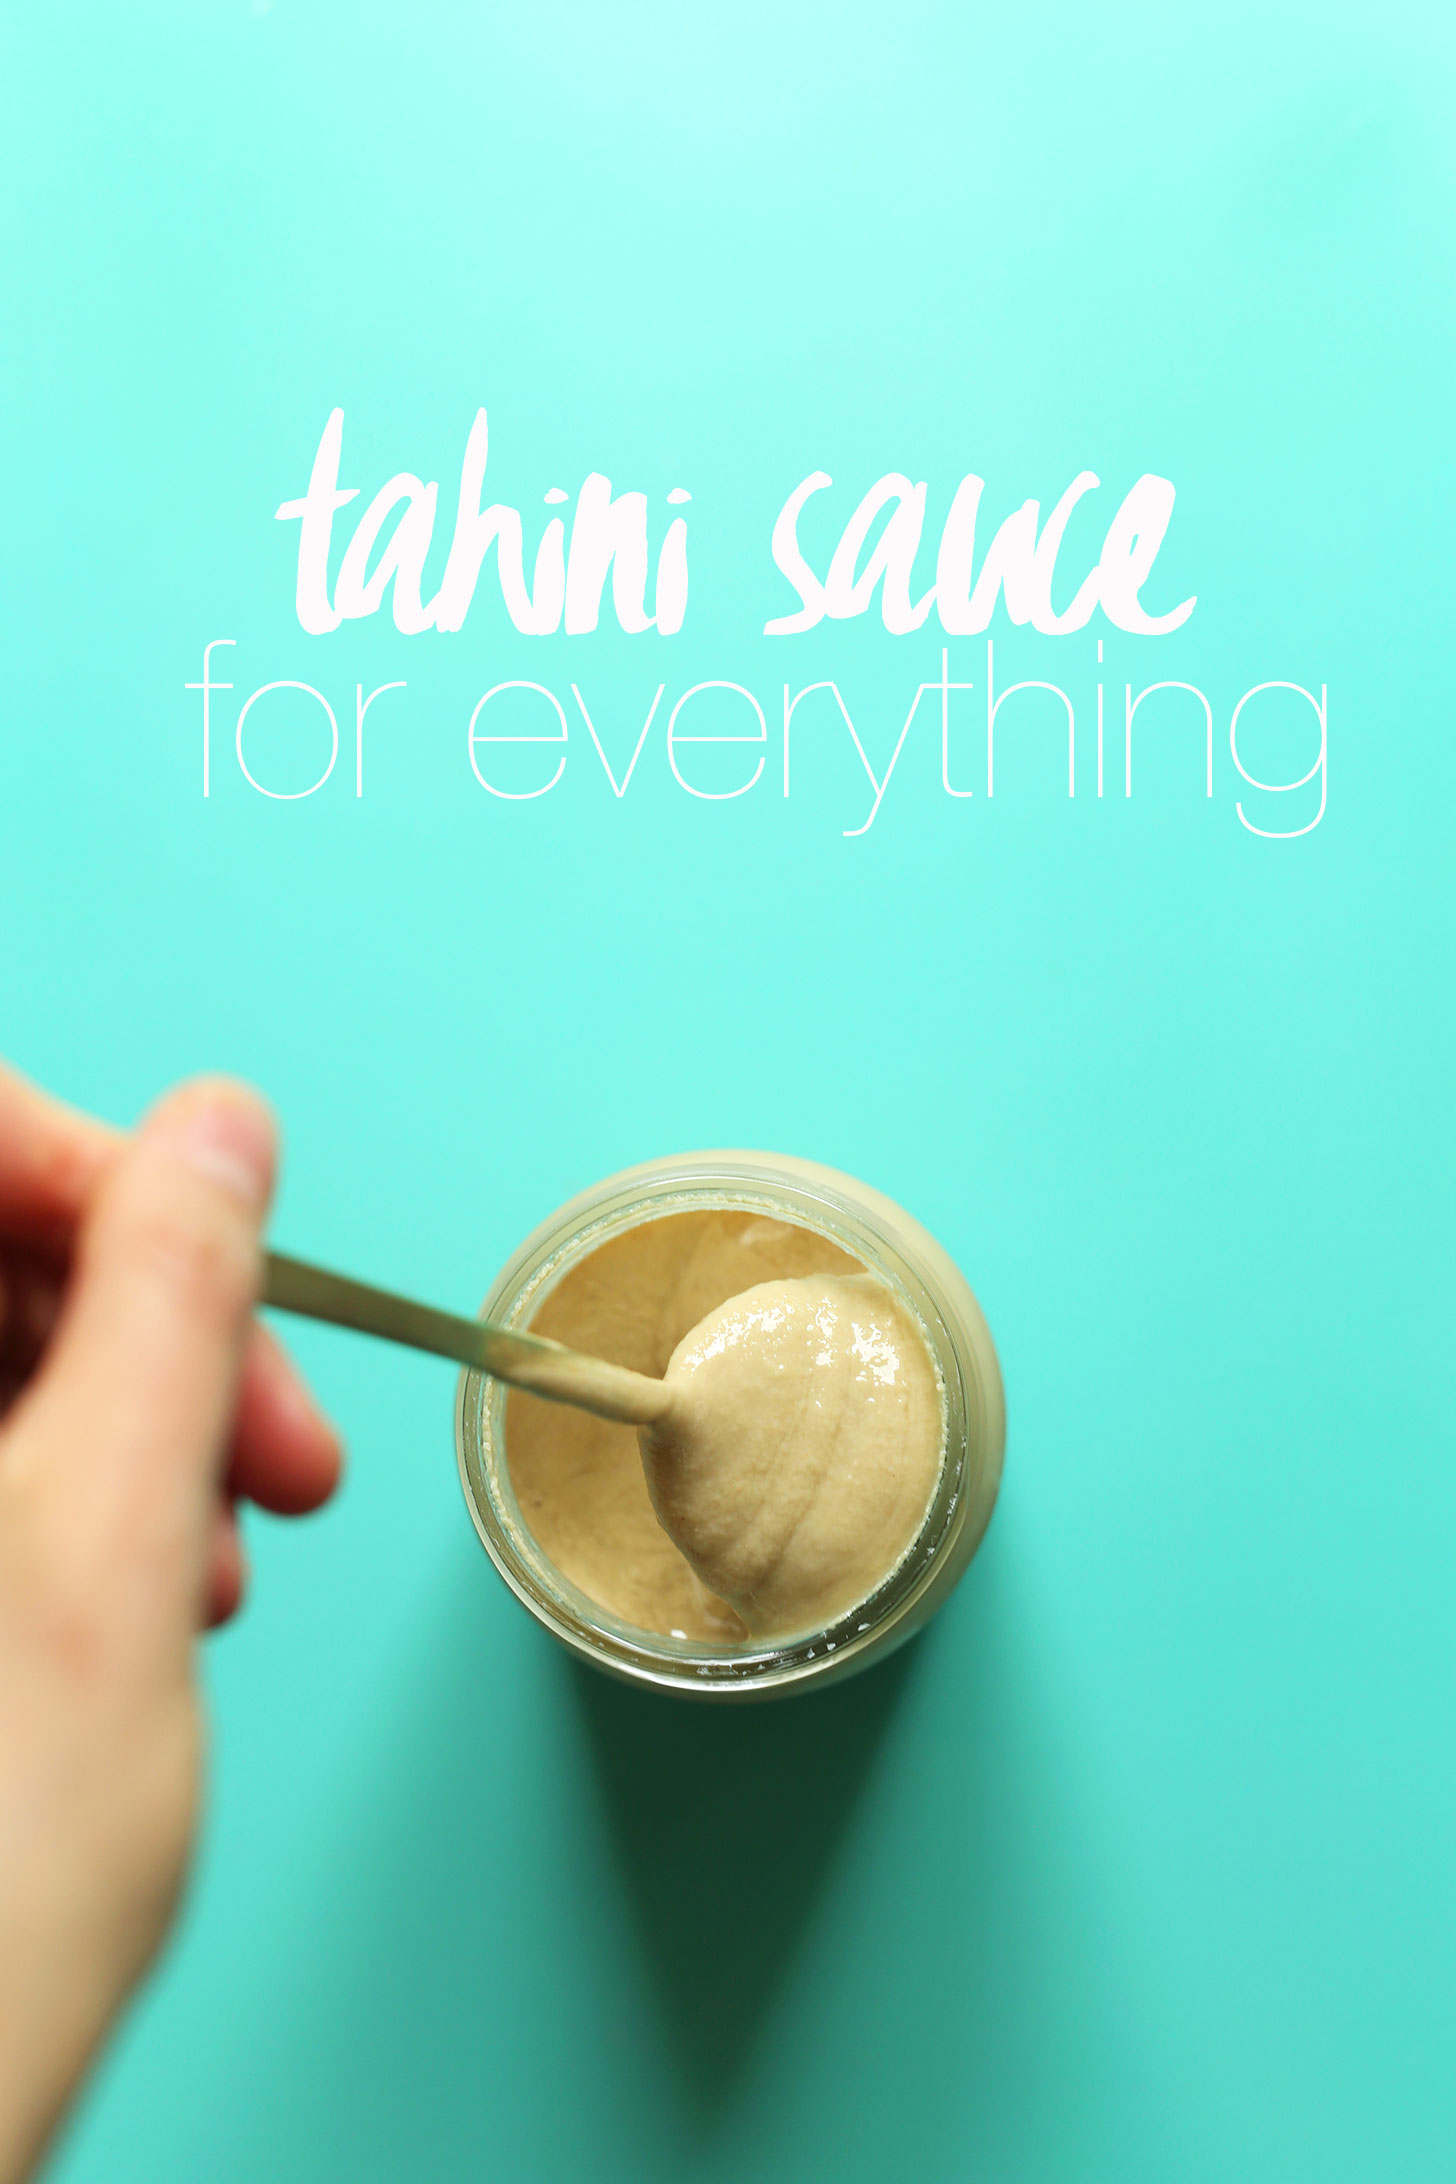 Grabbing a spoonful of gluten-free vegan tahini sauce